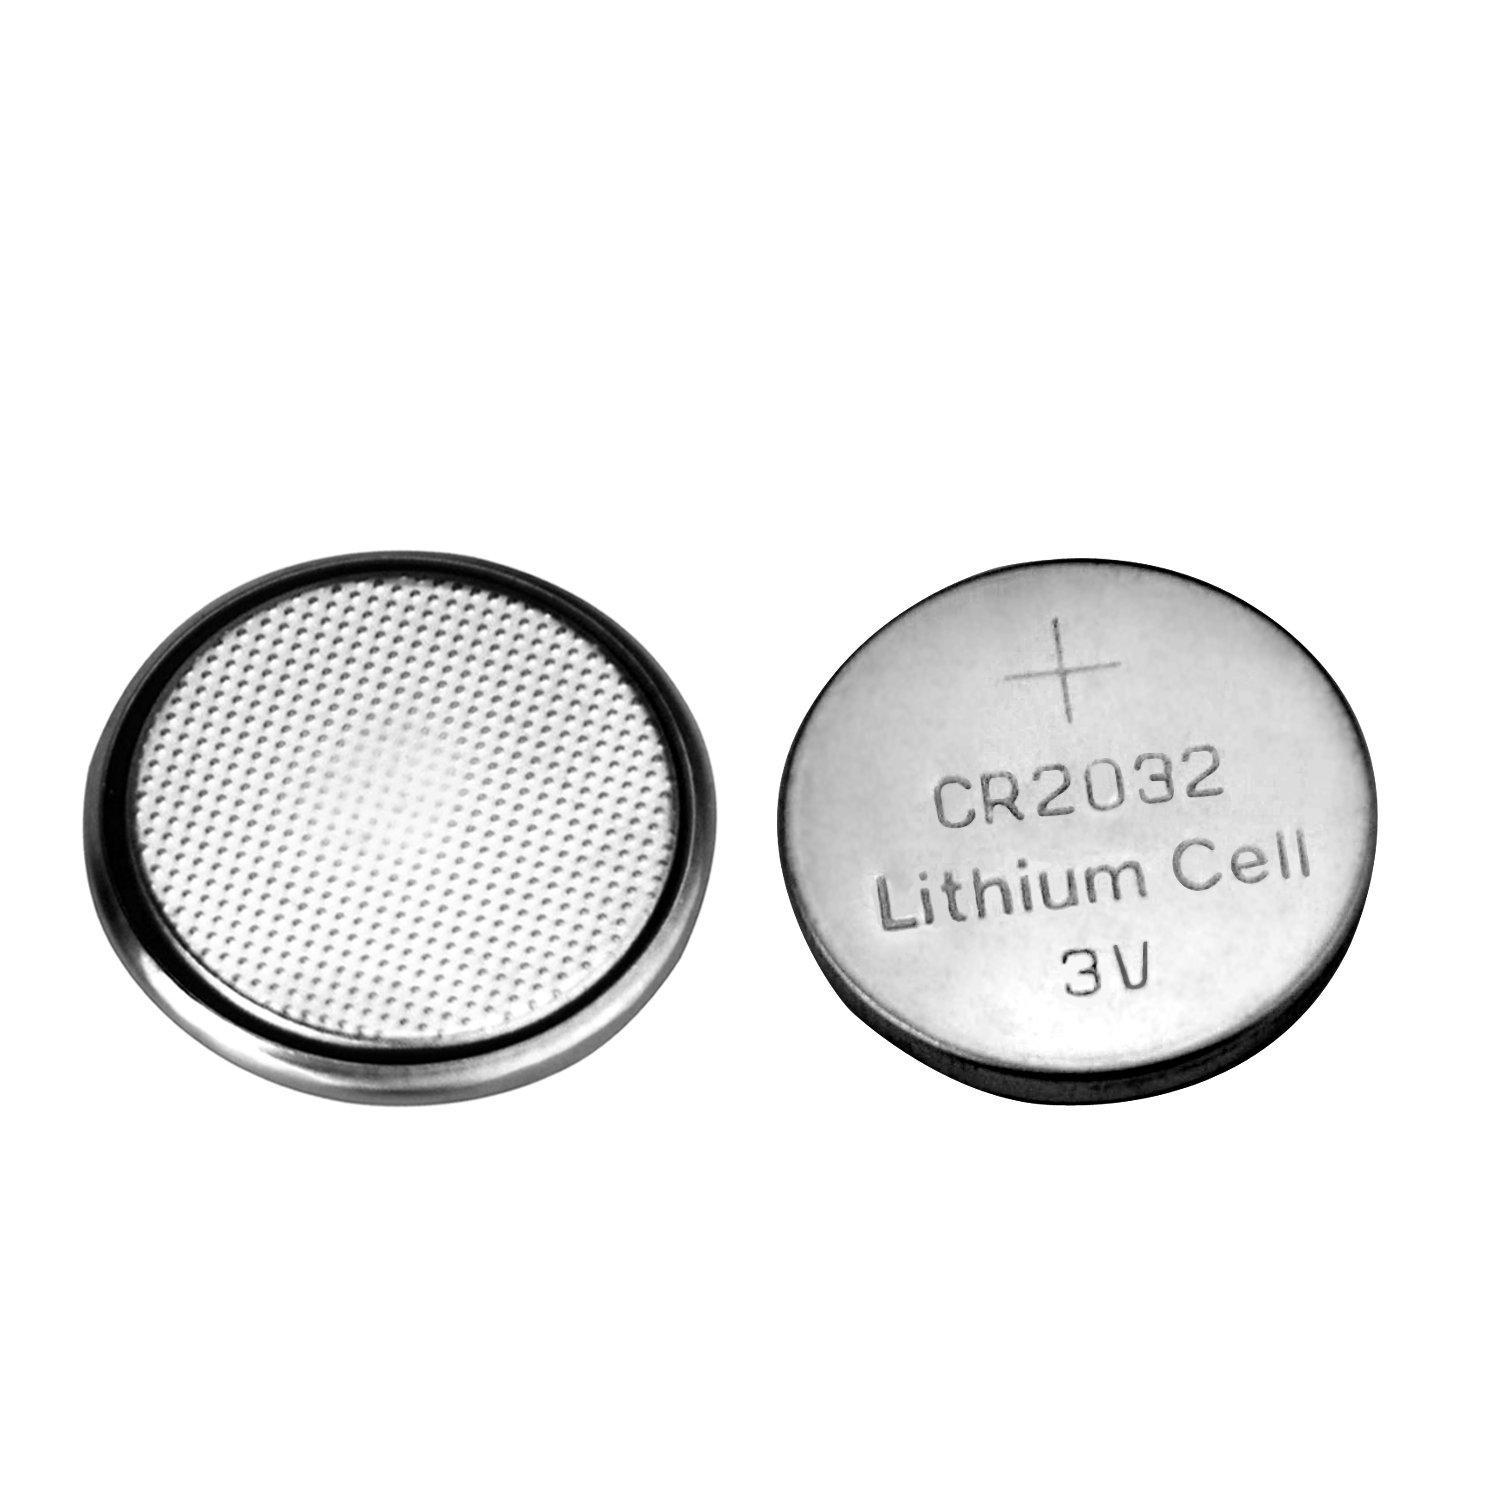 Cr2032 batteries. Lithium Battery cr2032 3v. Батарейка cr2032 (3v). Круглая батарейка 3v cr2032. Батарейки Lithium Cell cr2032 3v.